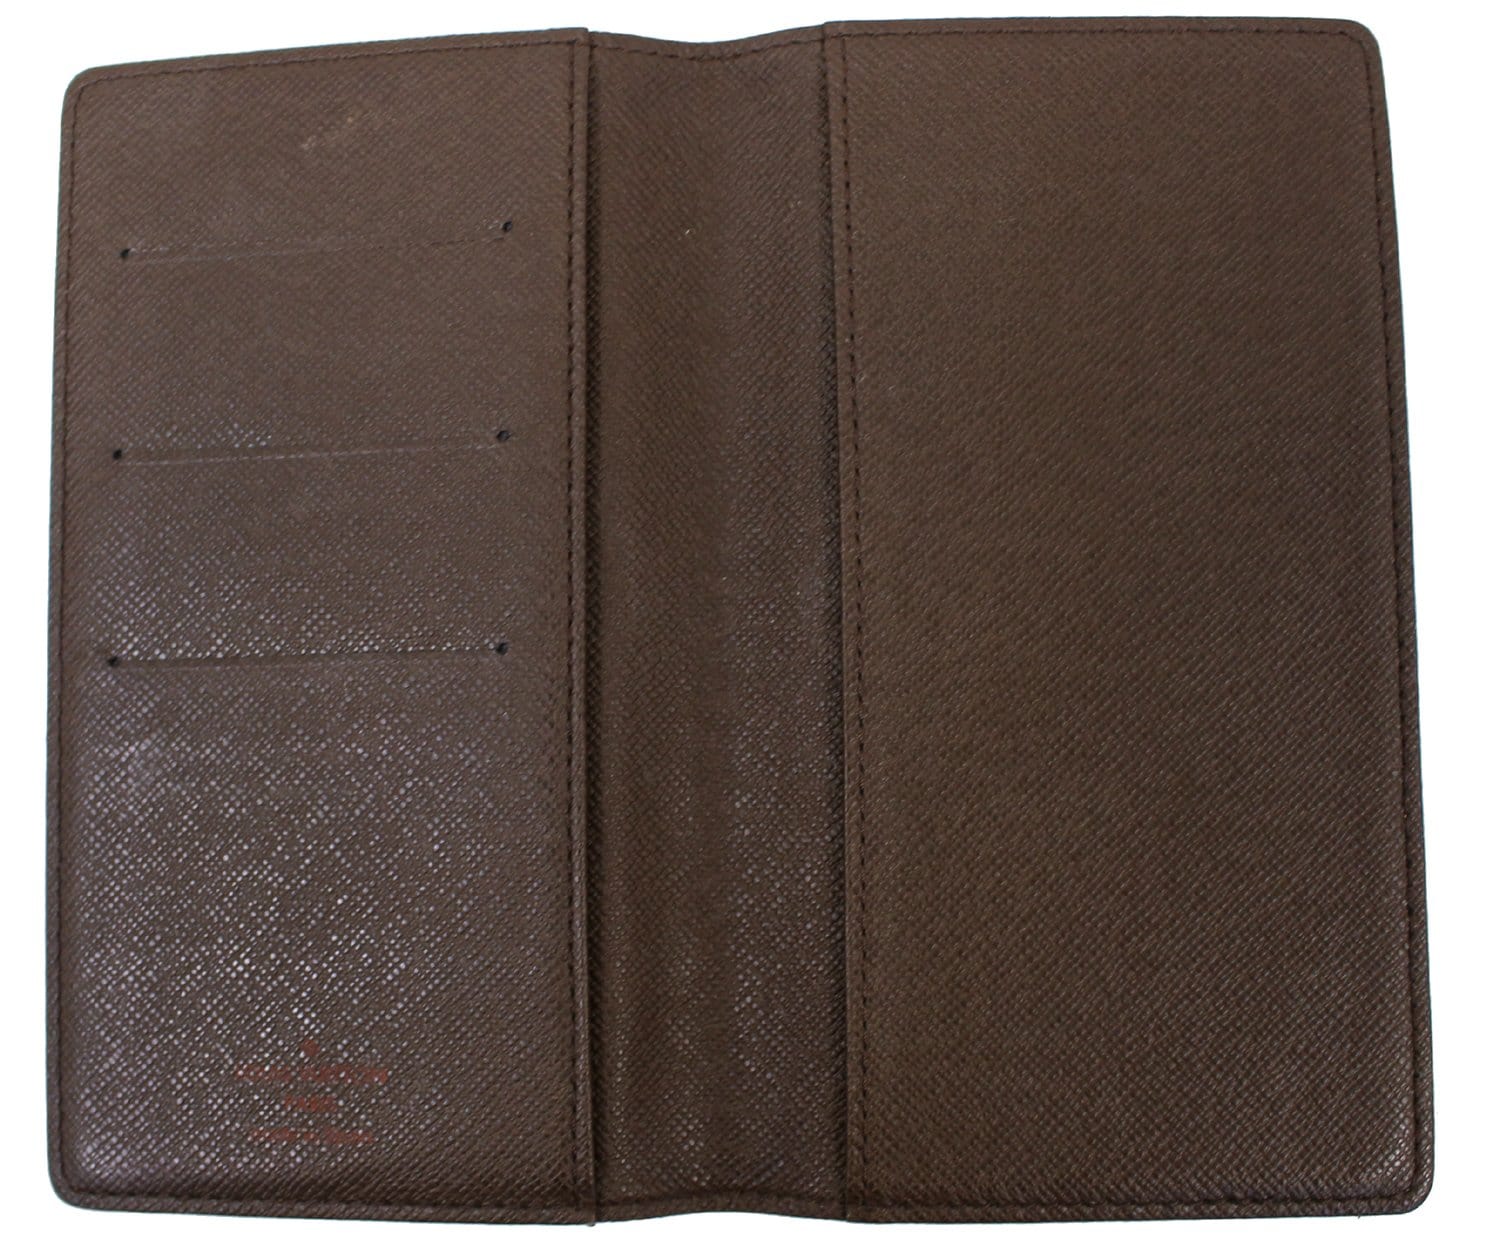 LOUIS VUITTON Damier Ebene Checkbook Cover Wallet 14920